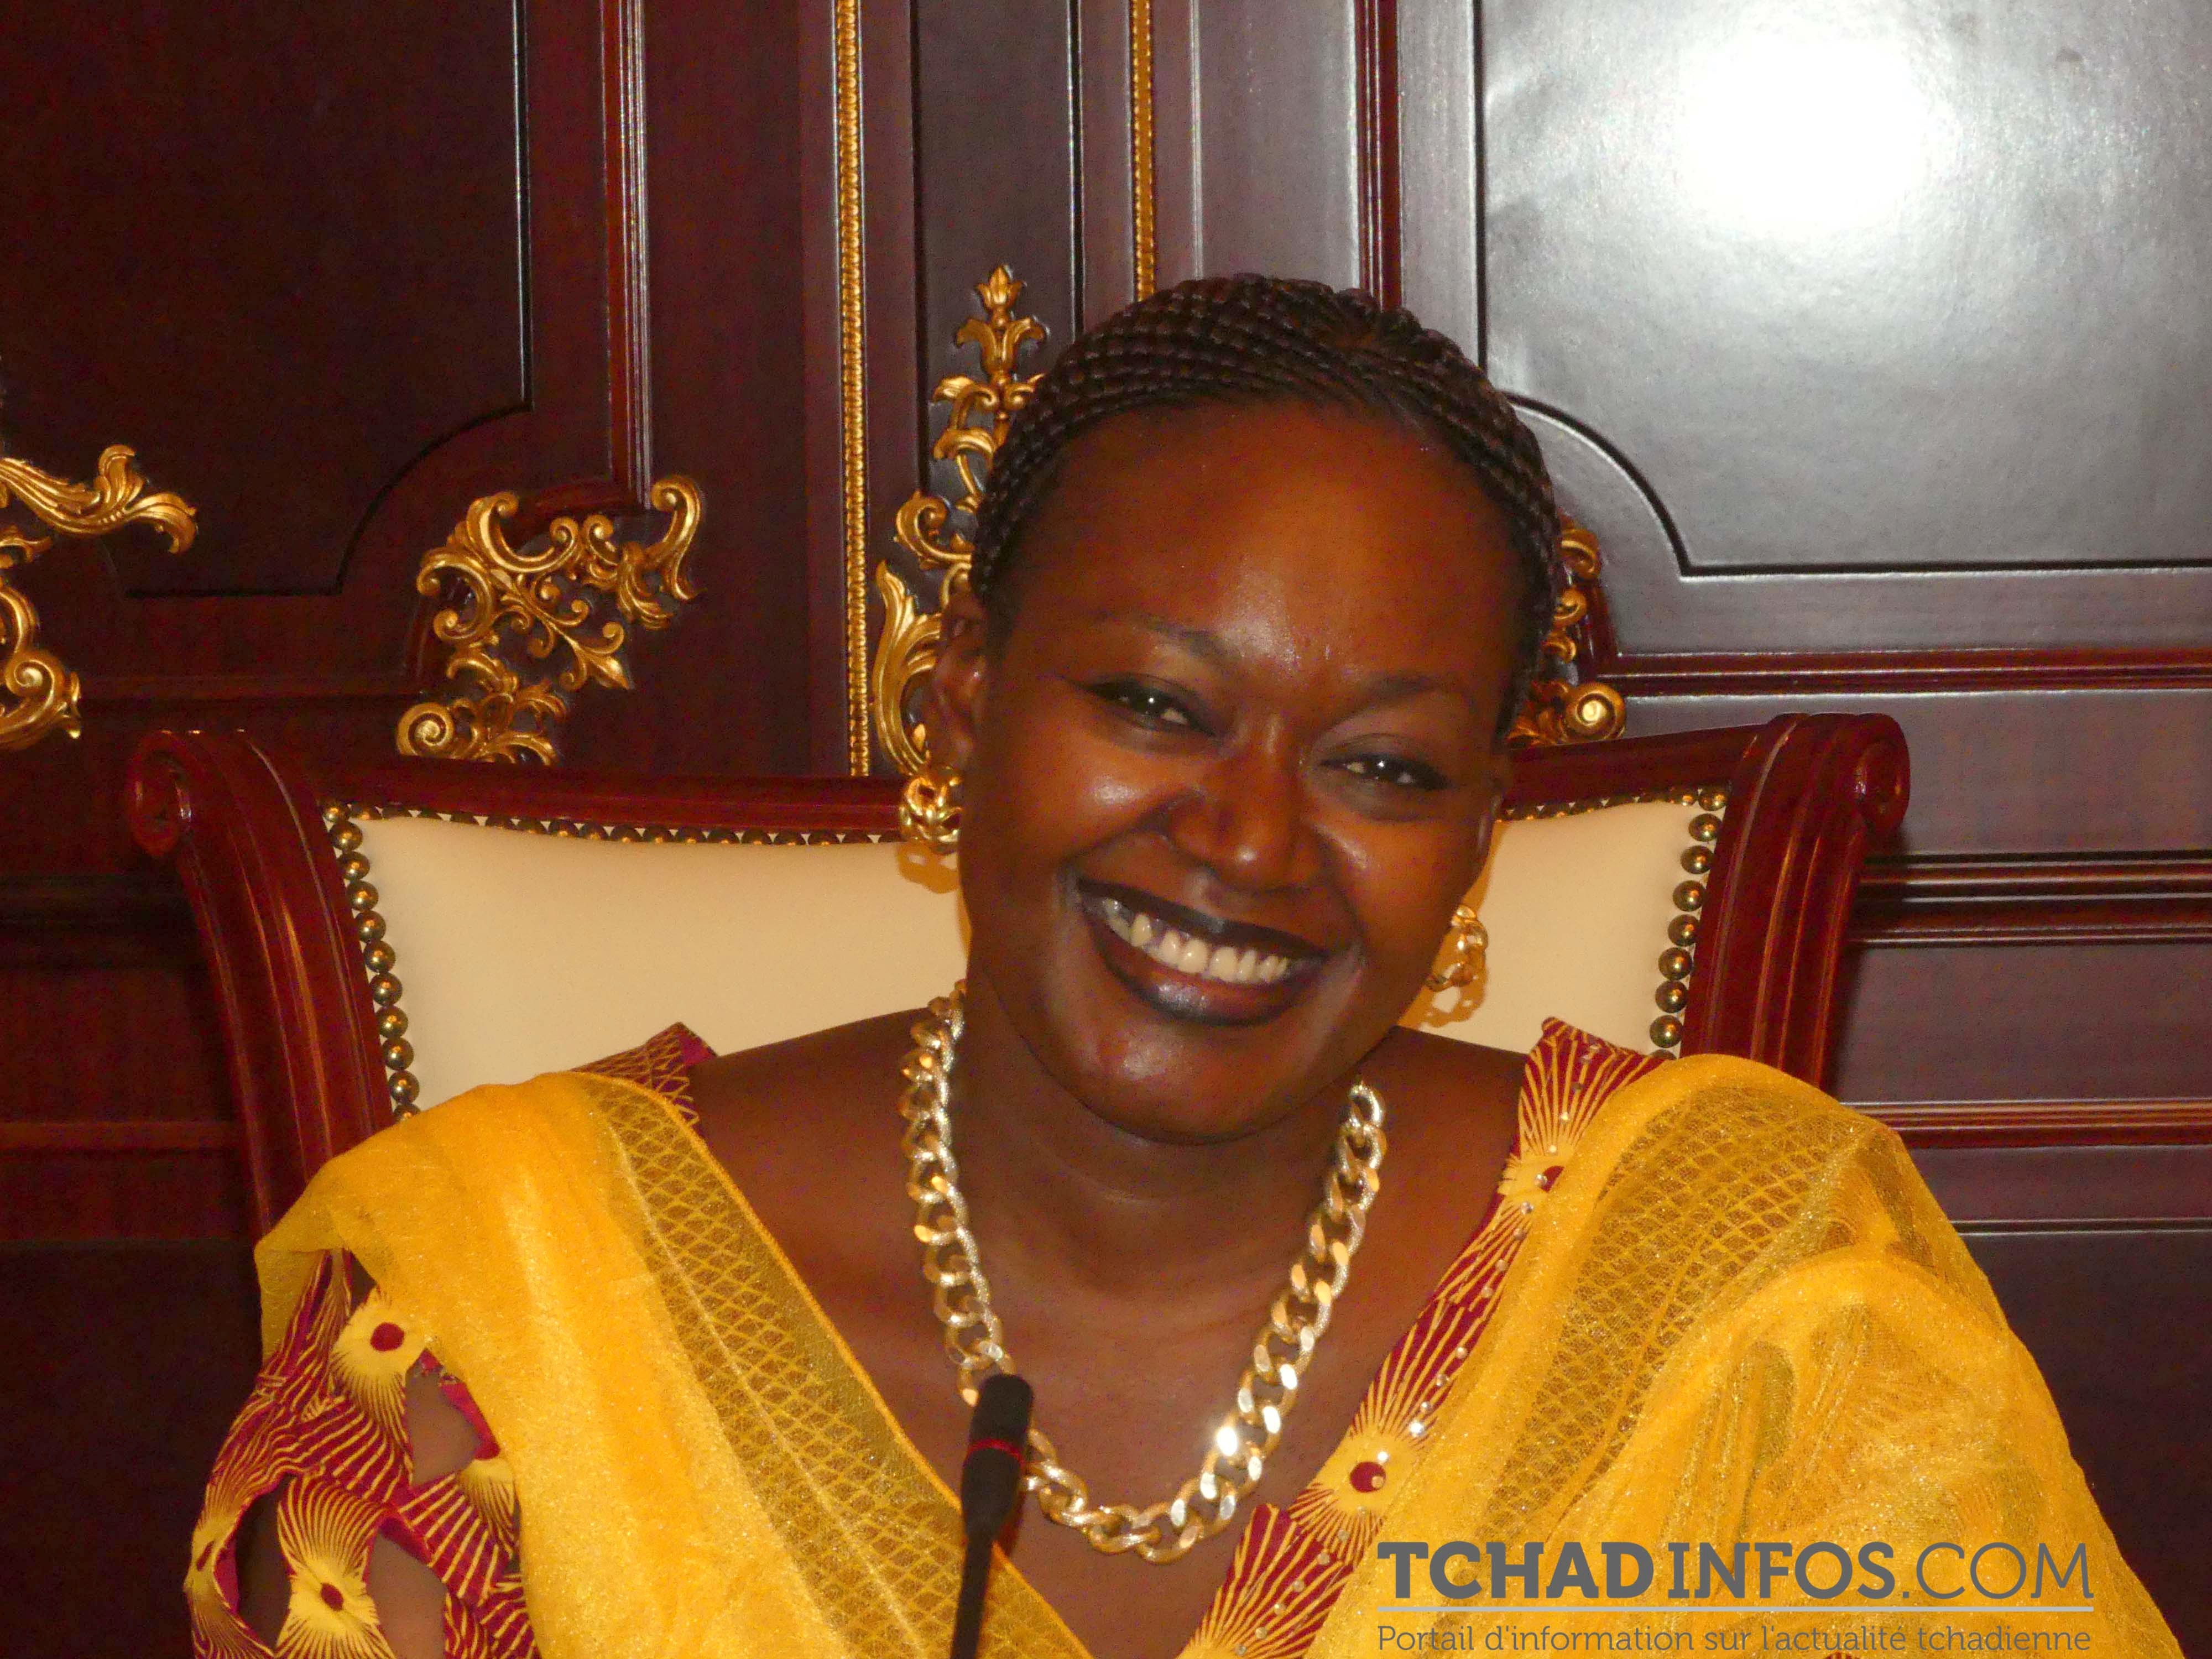 Gouvernement : « Le Tchad a toujours respecté les textes relatifs à la protection des droits de l’homme et du citoyen »